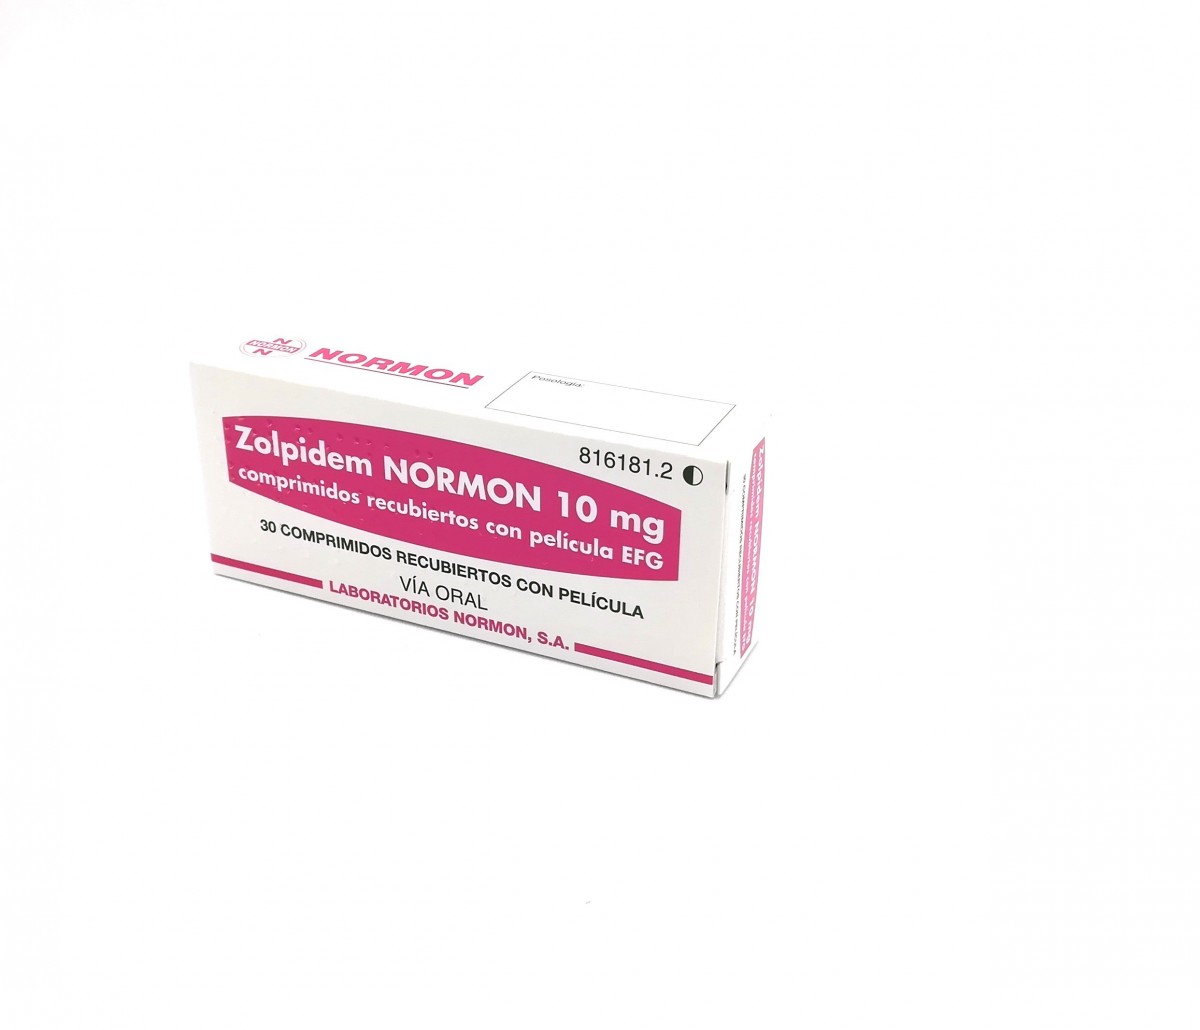 ZOLPIDEM NORMON 10 mg COMPRIMIDOS RECUBIERTOS CON PELICULA EFG , 500 comprimidos fotografía del envase.